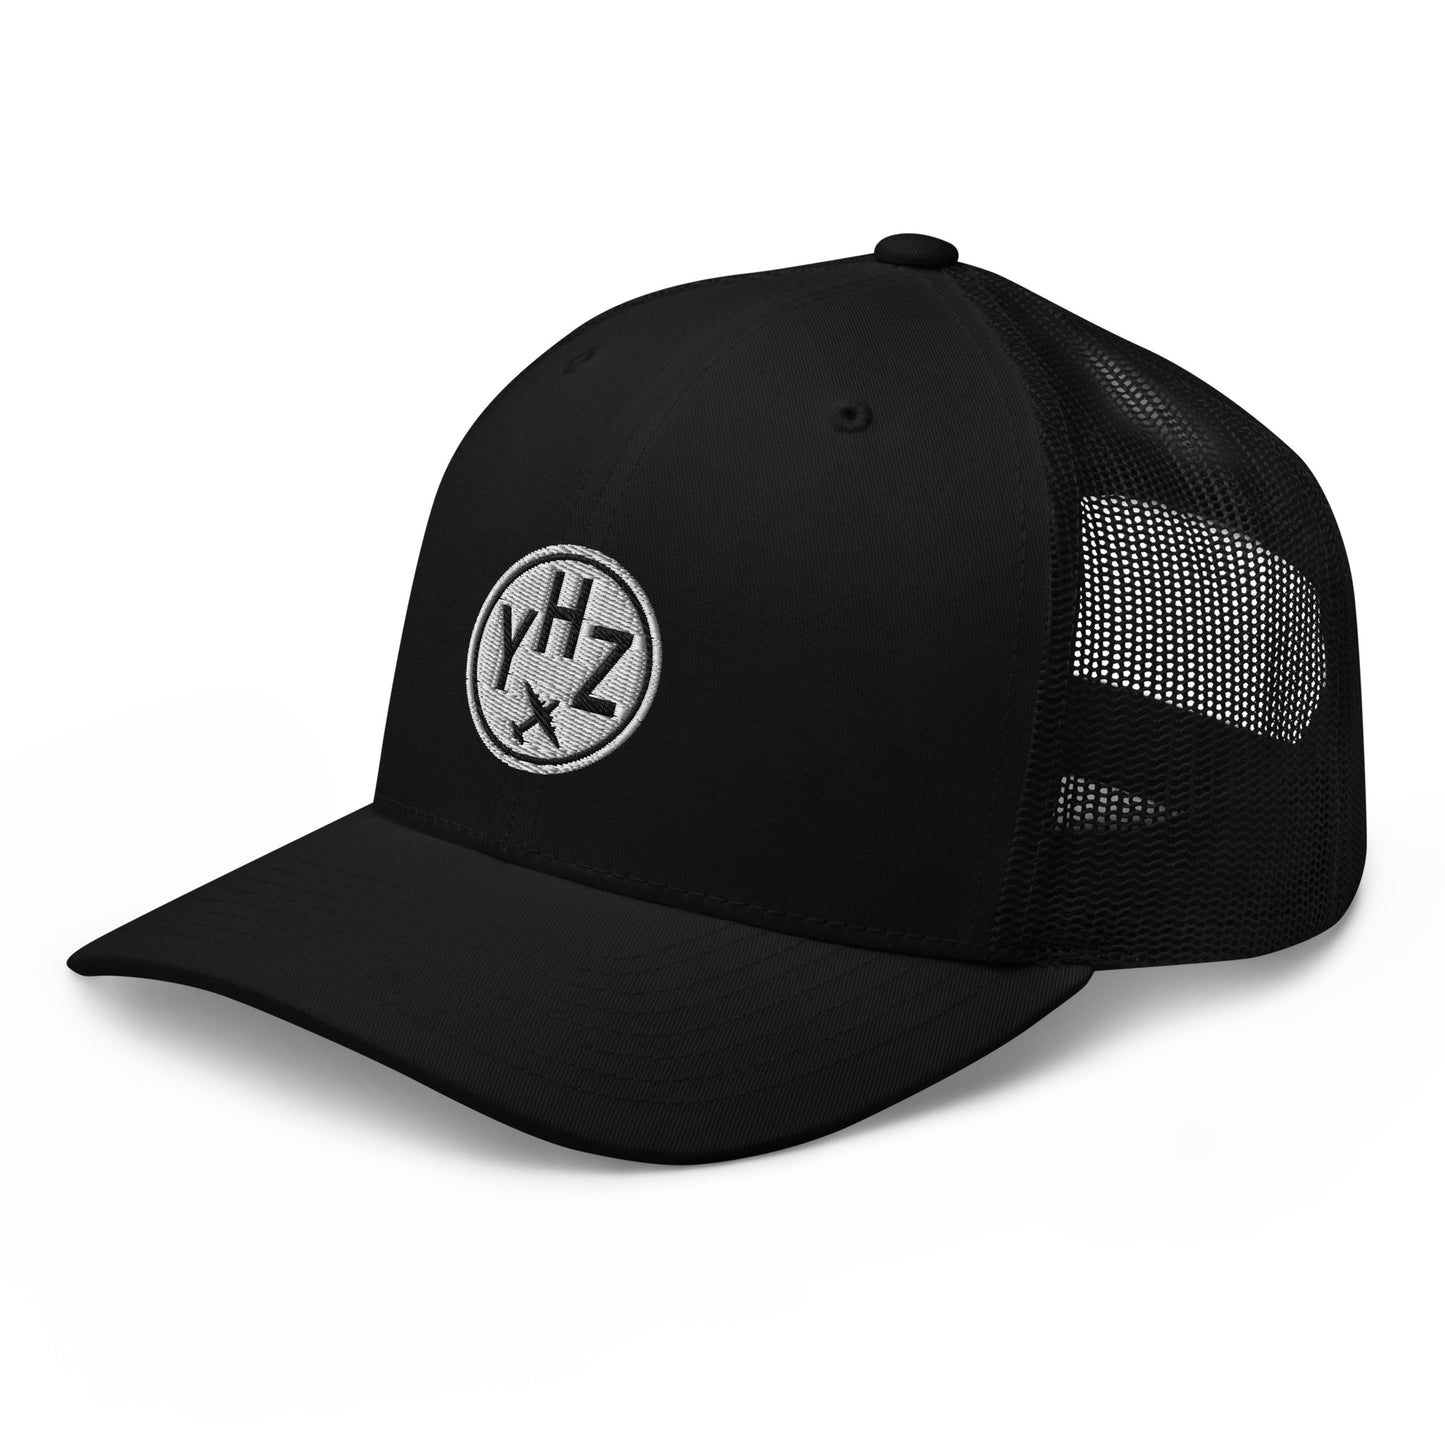 Roundel Trucker Hat - Black & White • YHZ Halifax • YHM Designs - Image 08